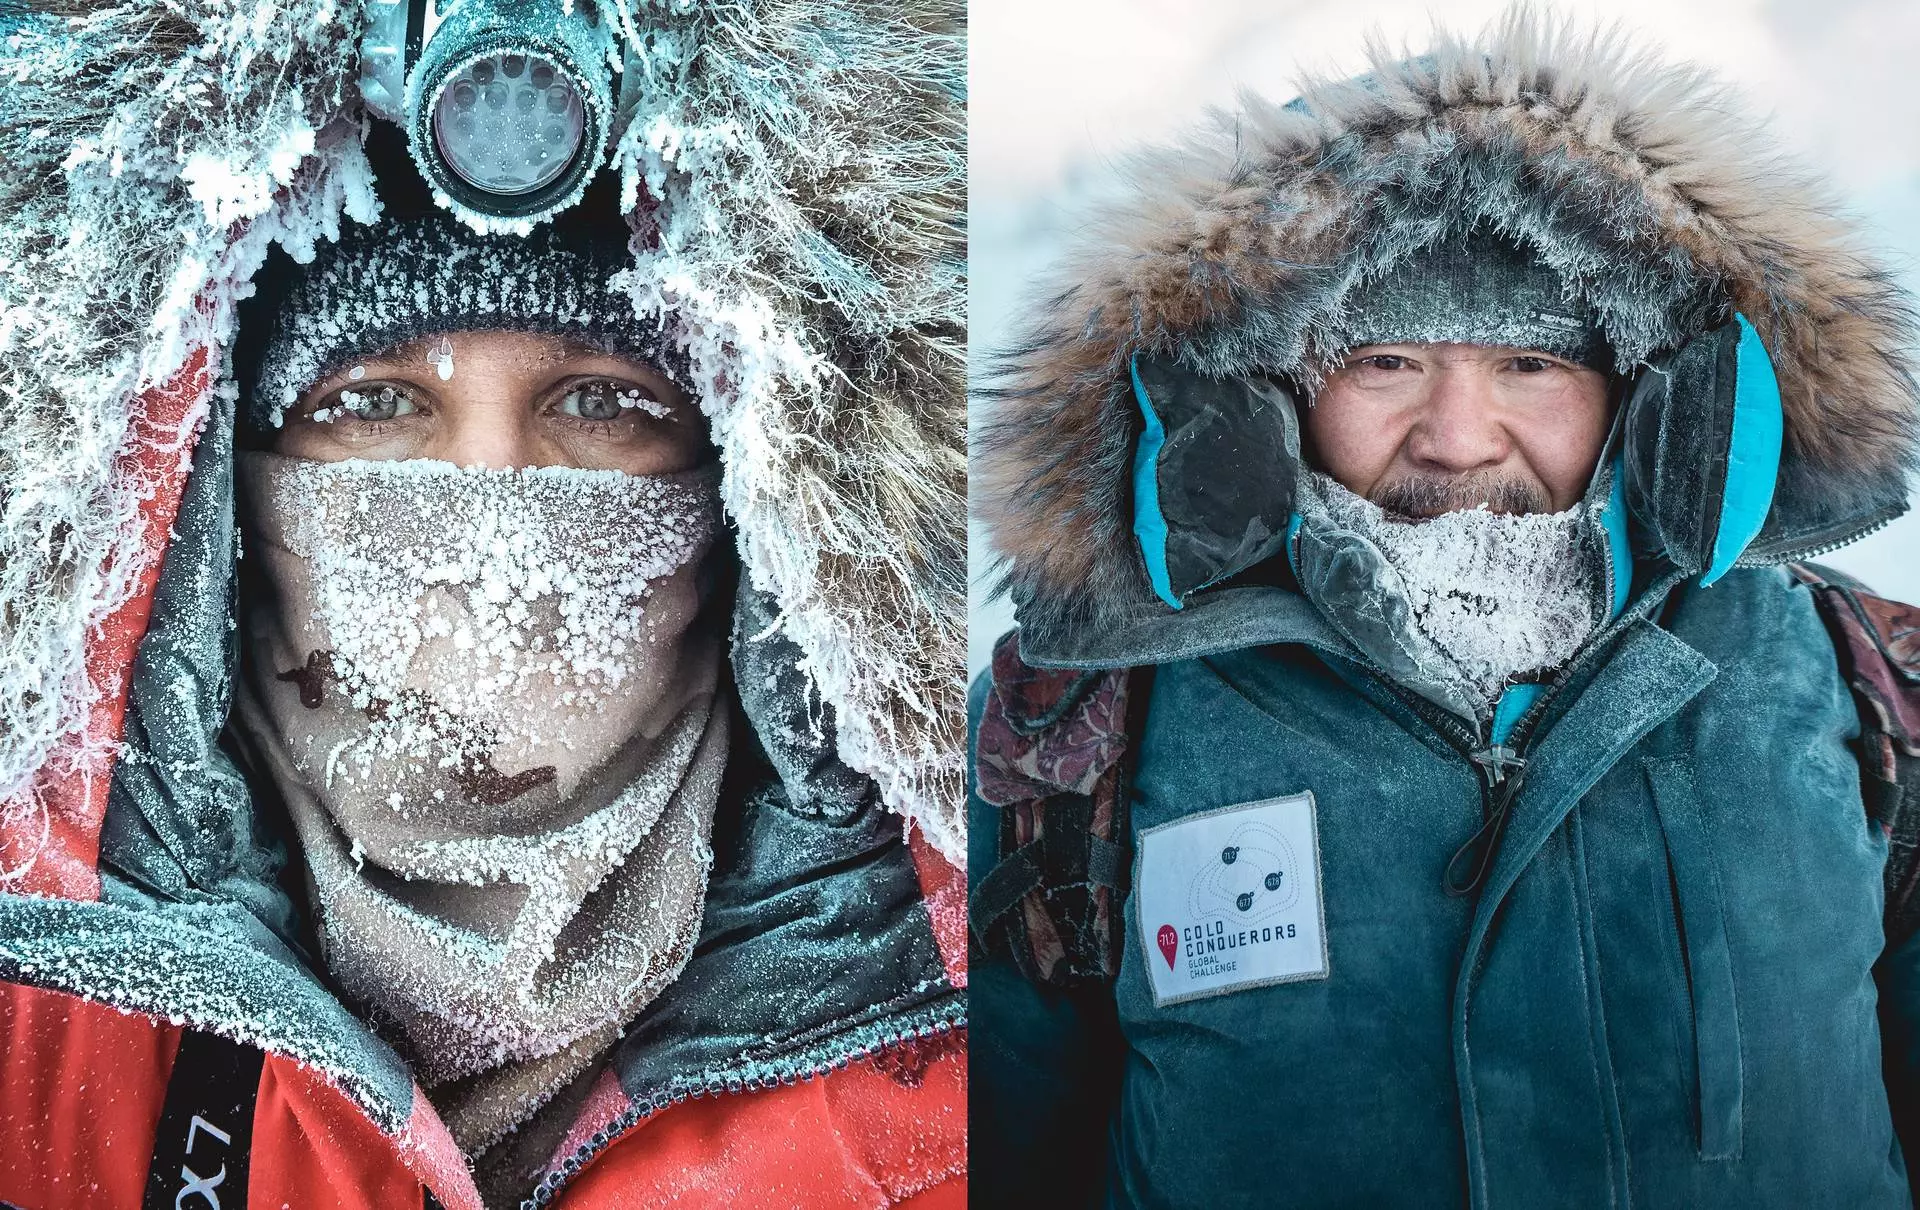 Полюс холода: суровая жизнь в якутии при -50° как обычное явление | page 4 | крамола